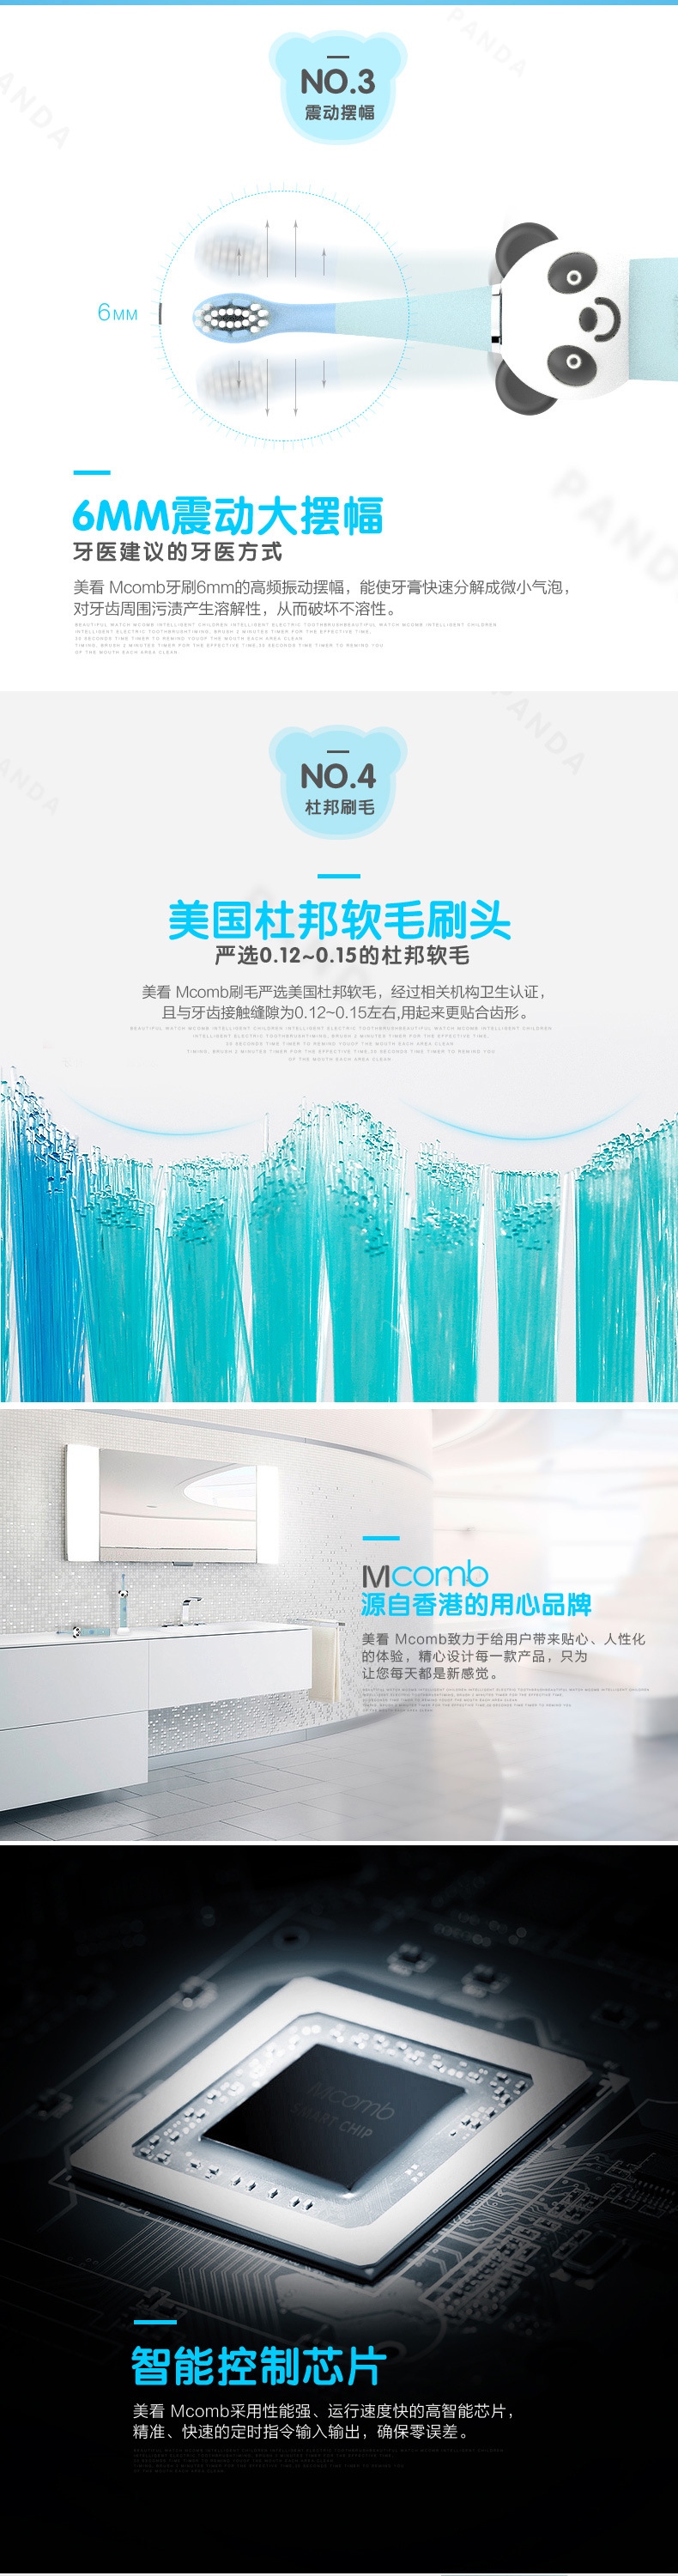 香港Mcomb儿童电动牙刷 软毛包胶卡通 声波震动 智能定时 OEM贴牌示例图3